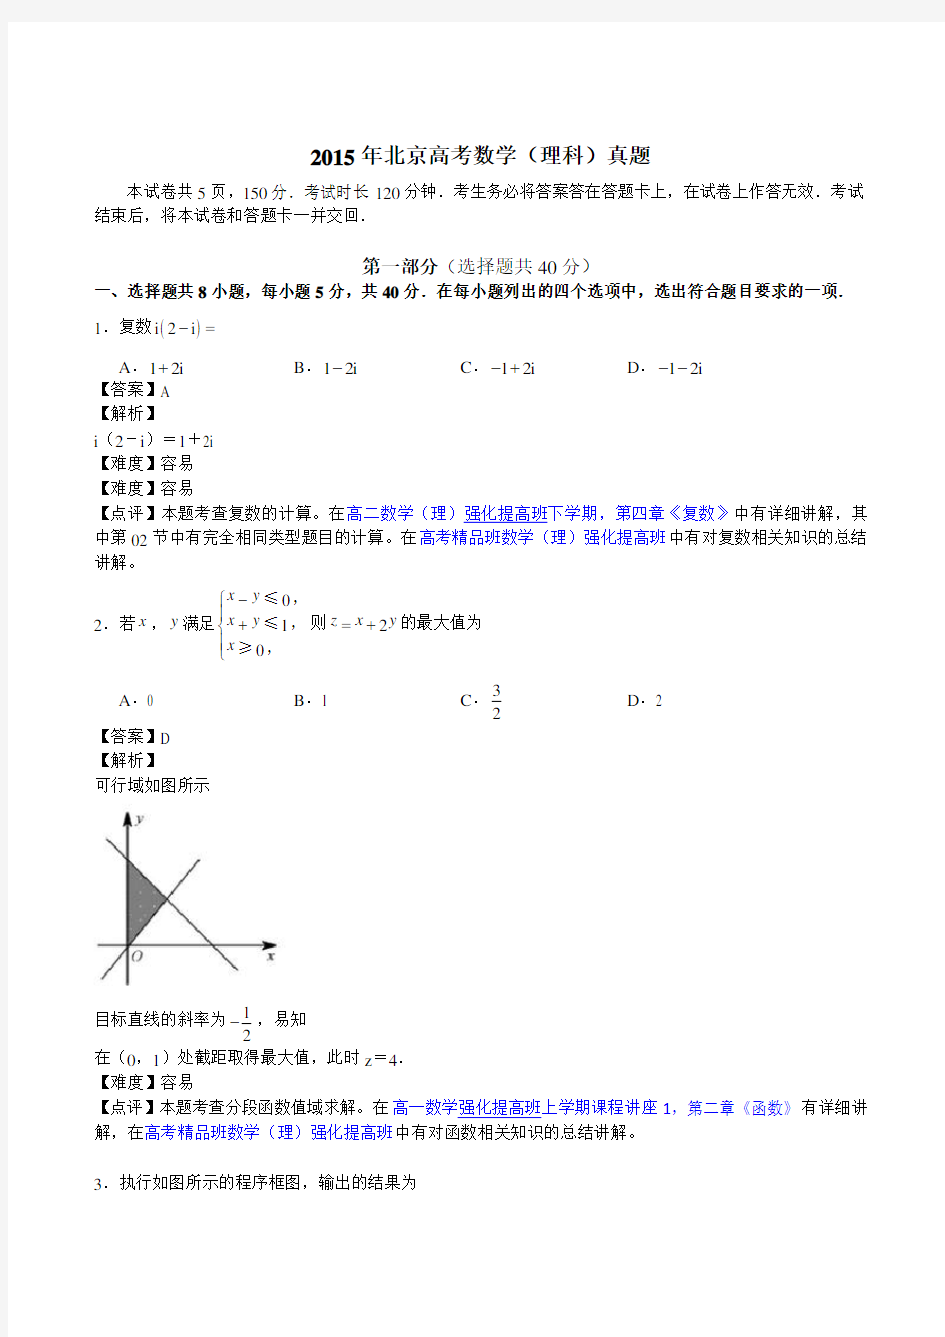 2015年高考试题及解析：理科数学(北京卷)_中小学教育网